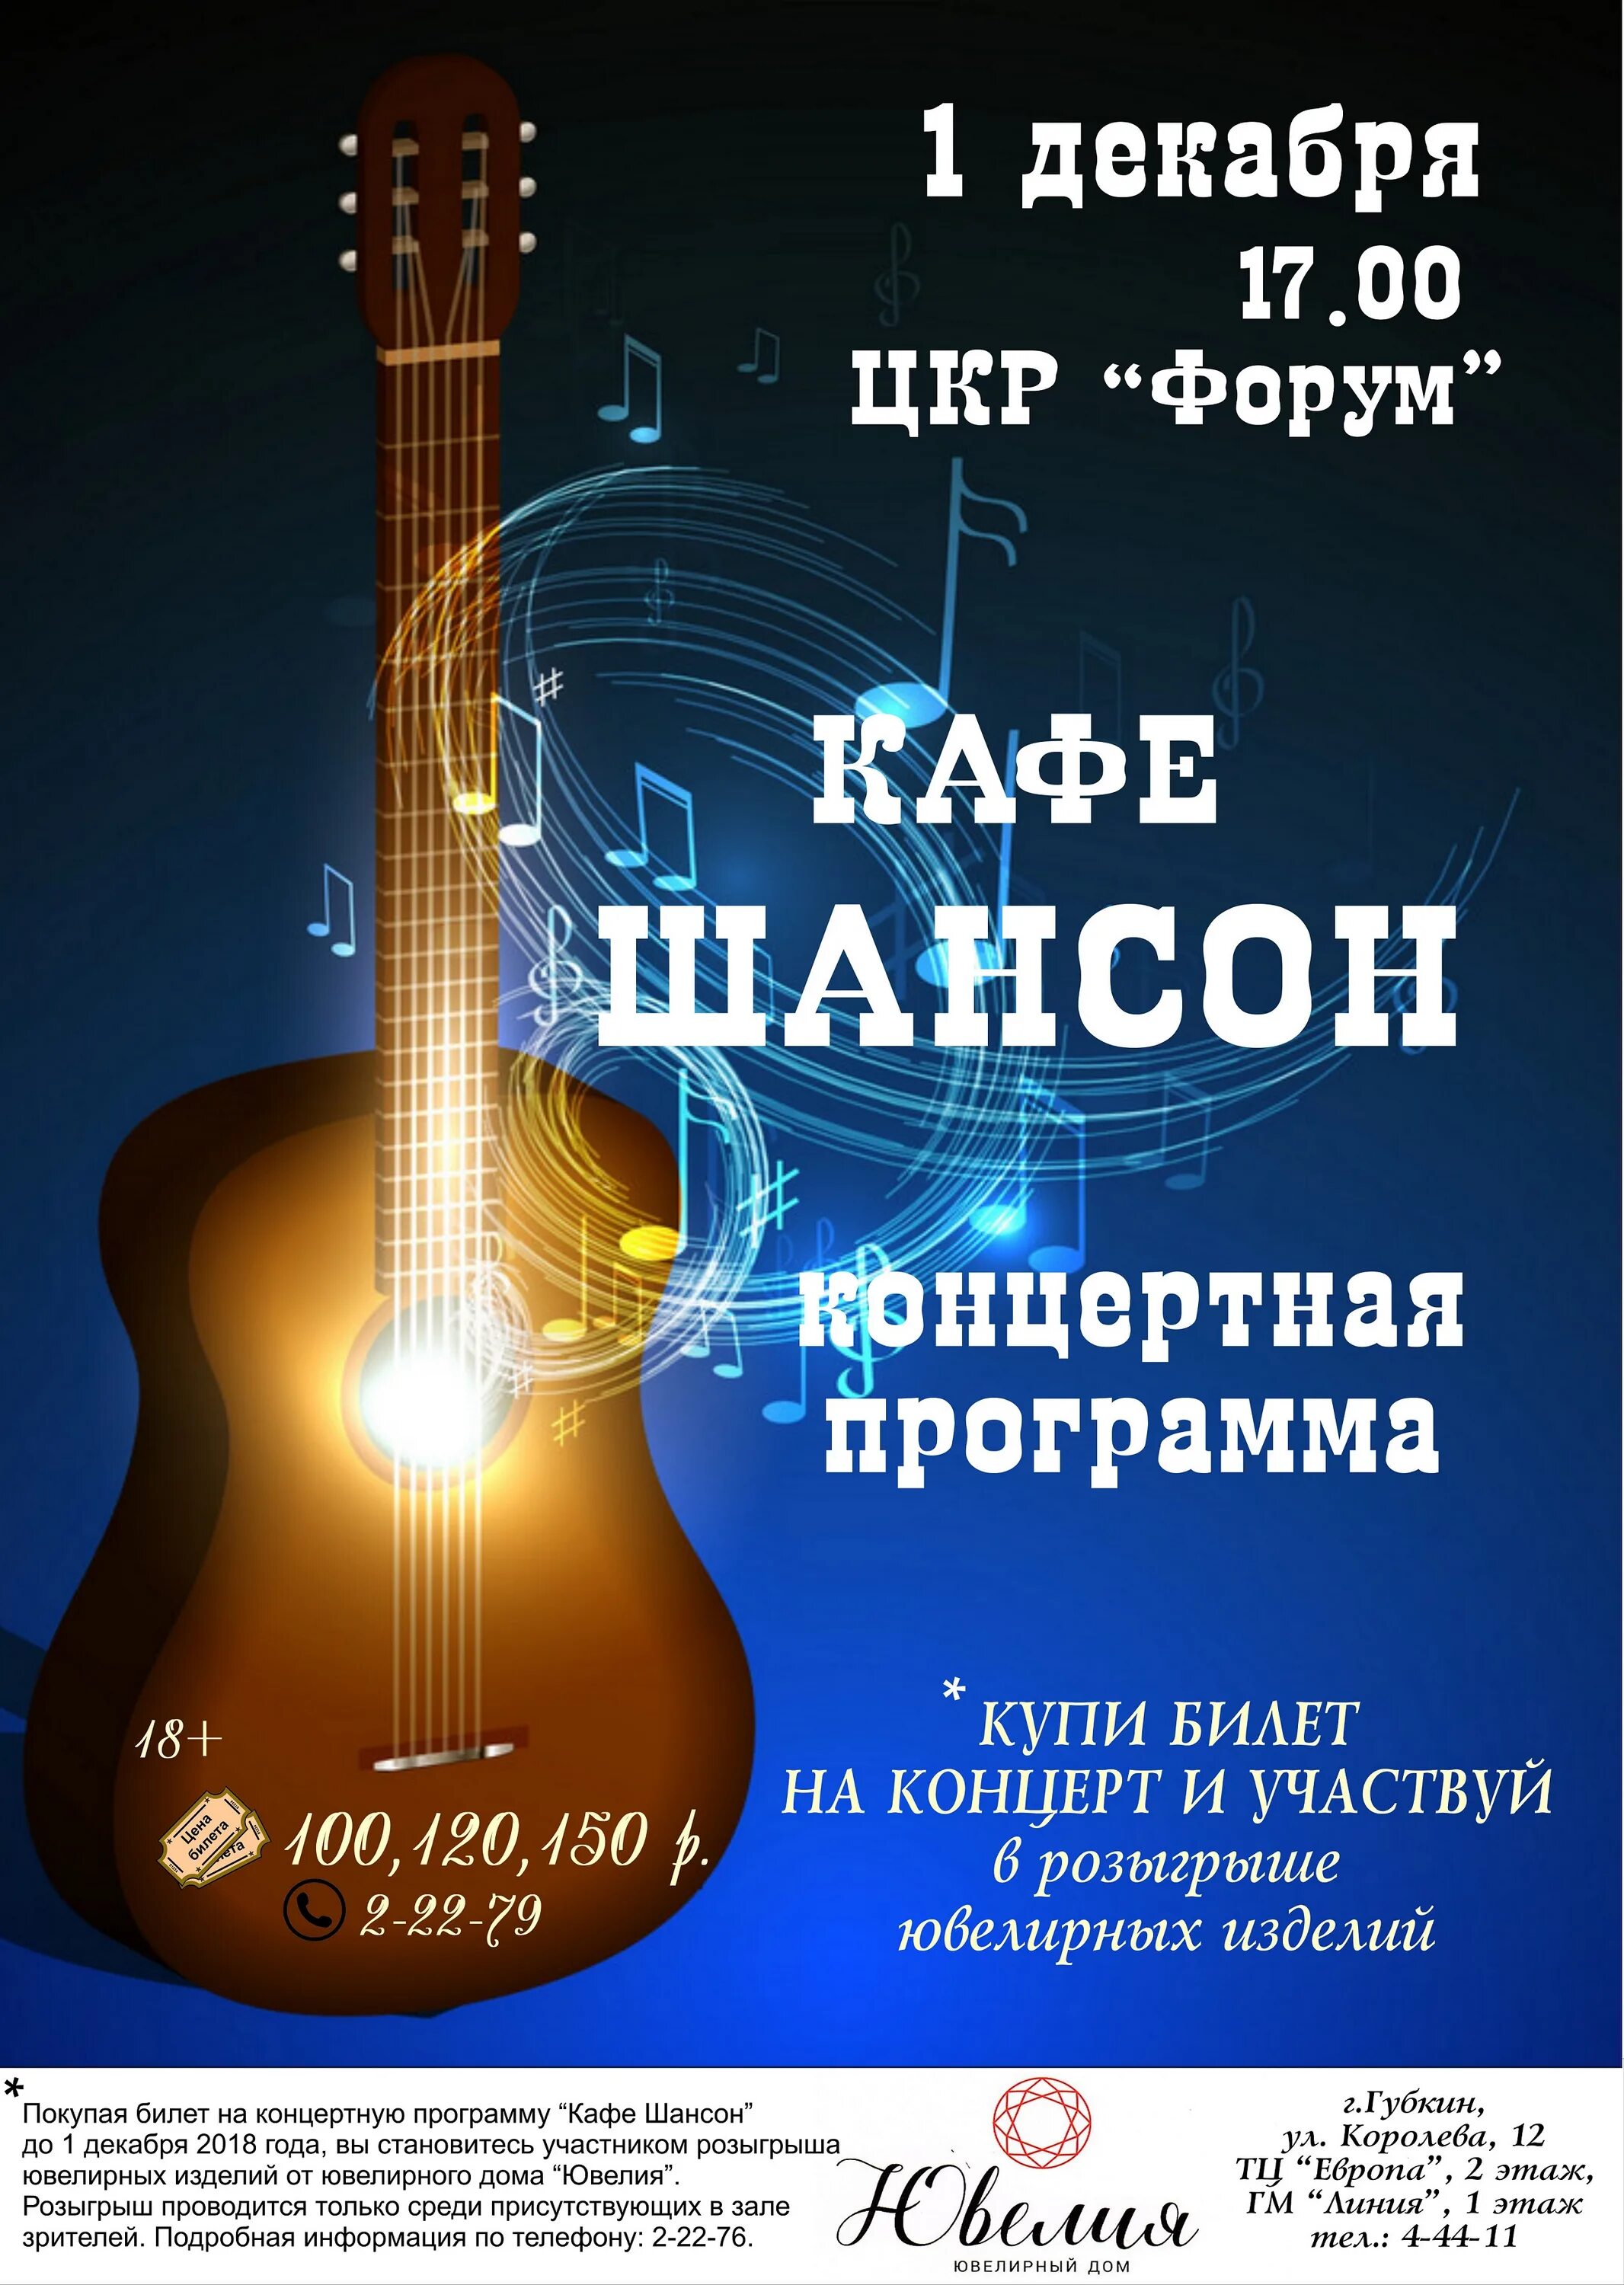 Купить билет на концерт шансон в москве